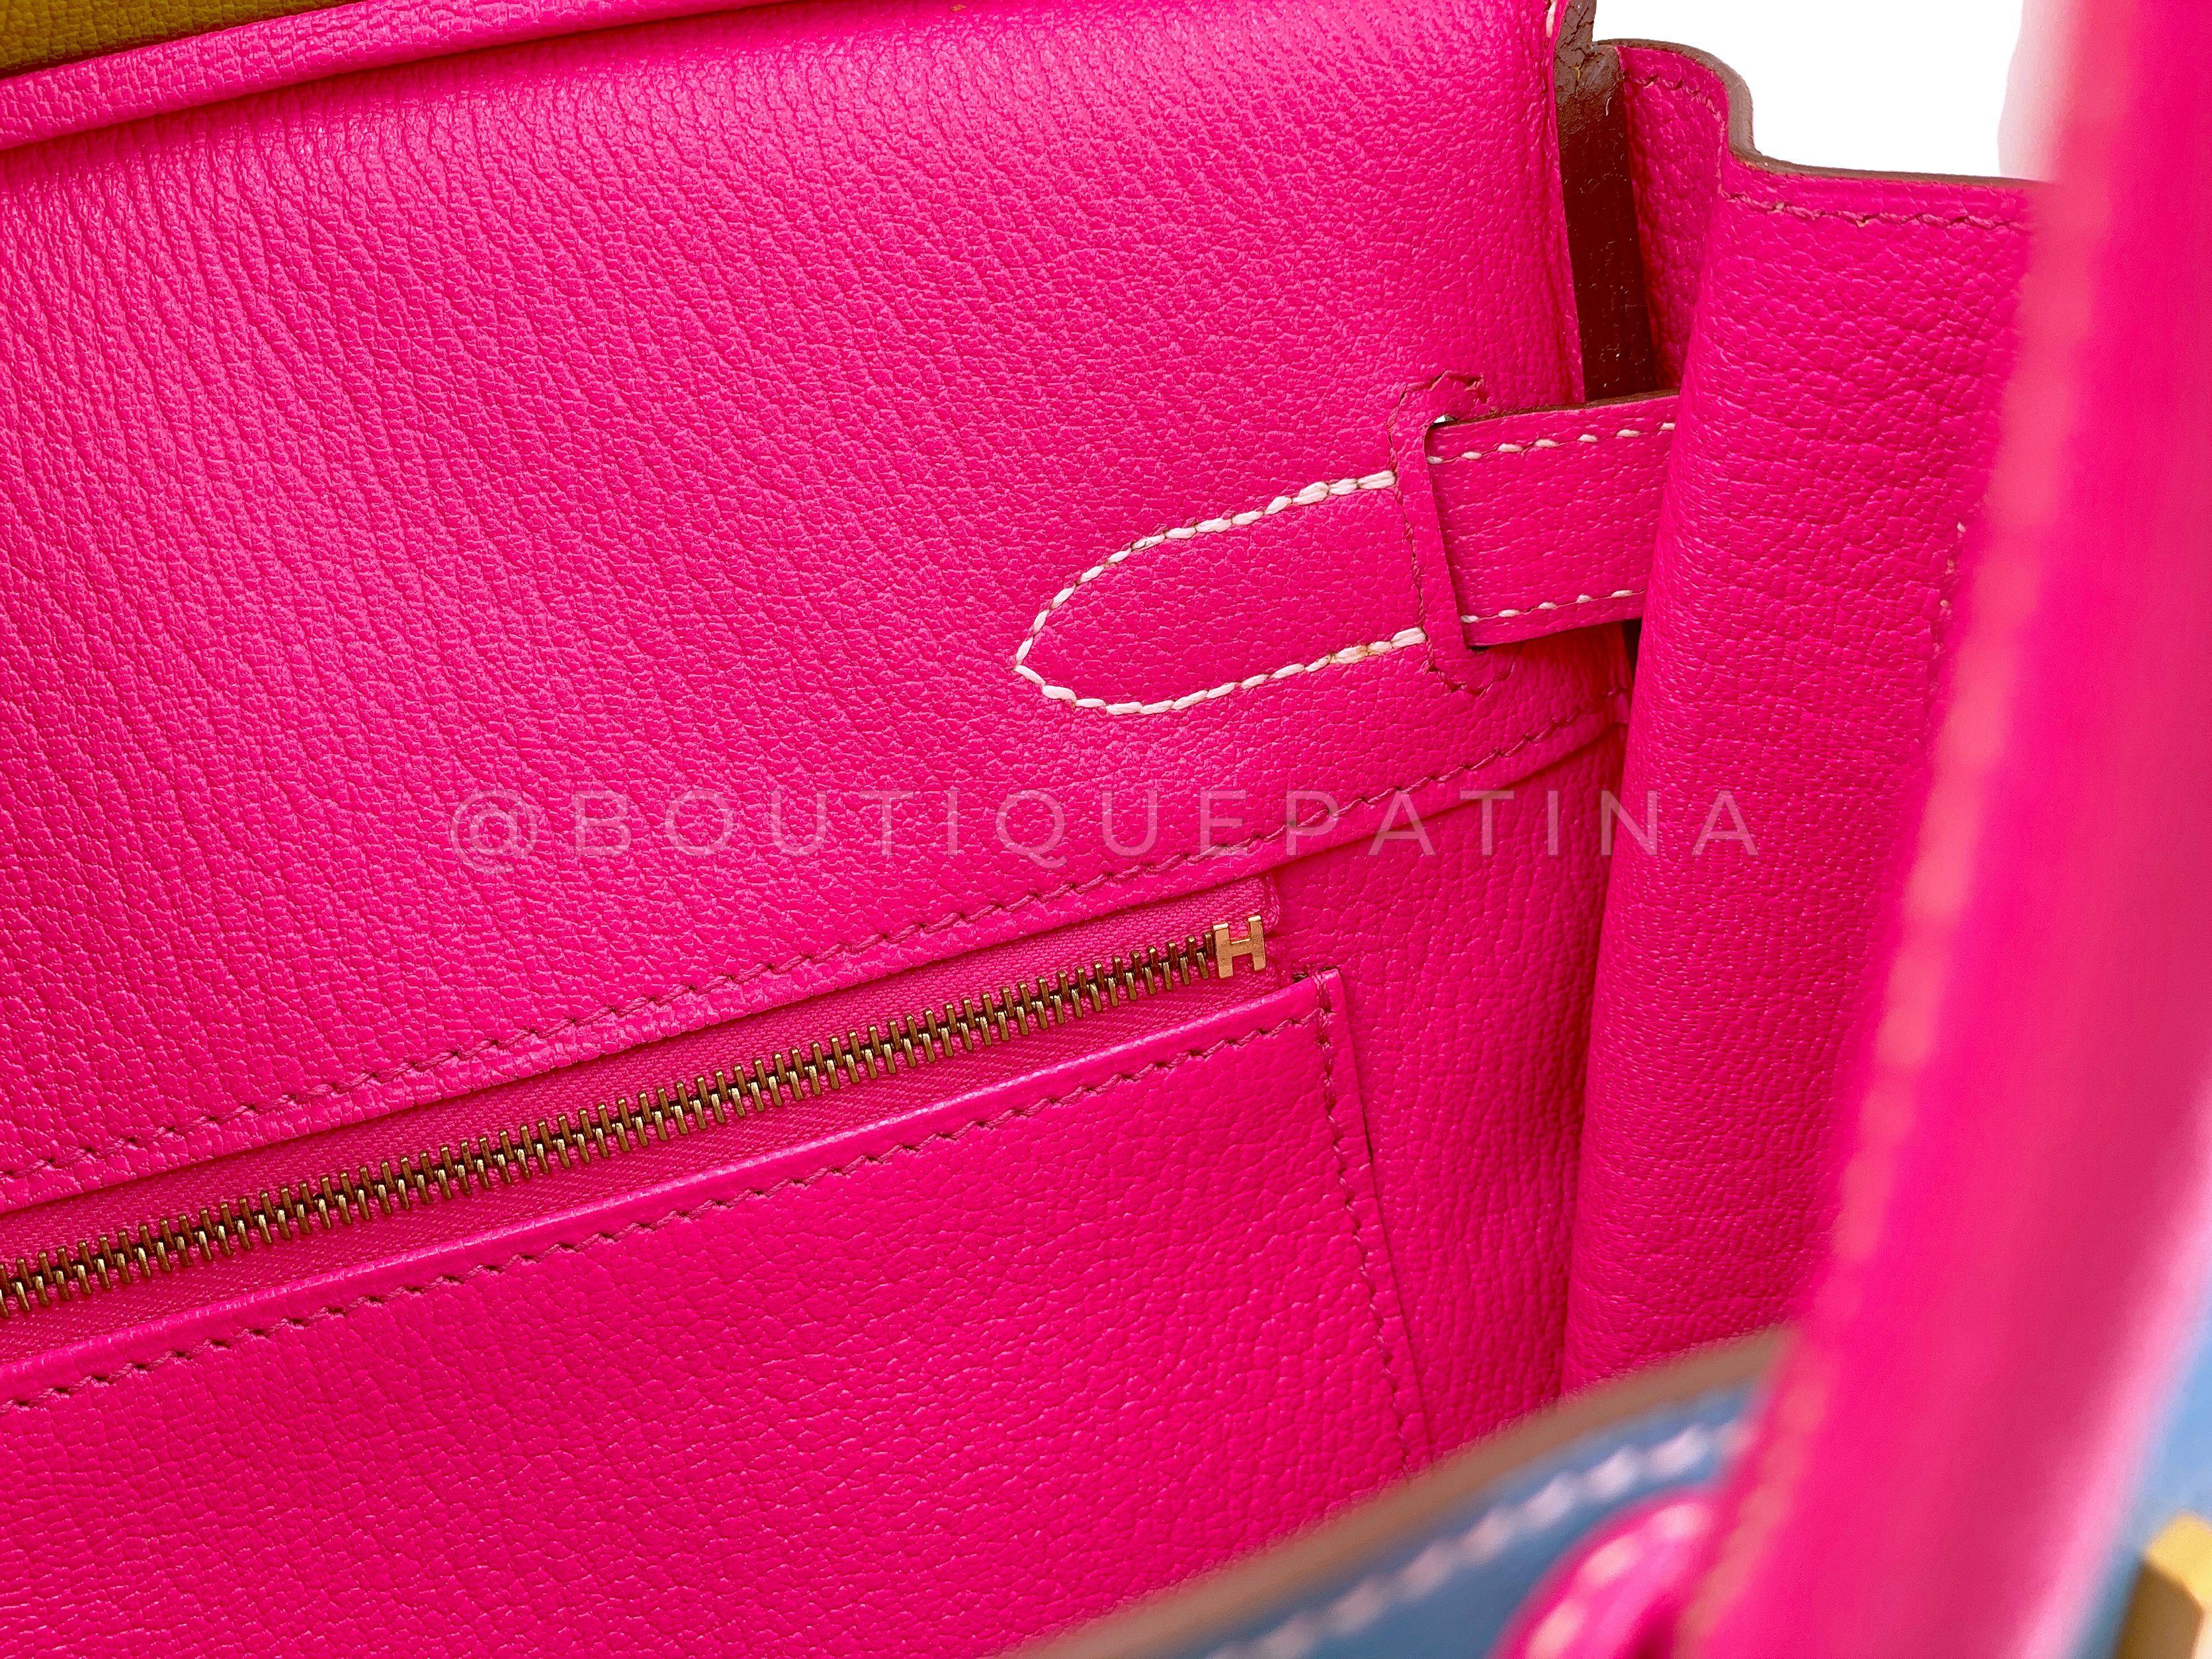 Hermès Special Order Chèvre 30cm Birkin Brushed Gold Pink Green Blue Bag 68121 For Sale 14